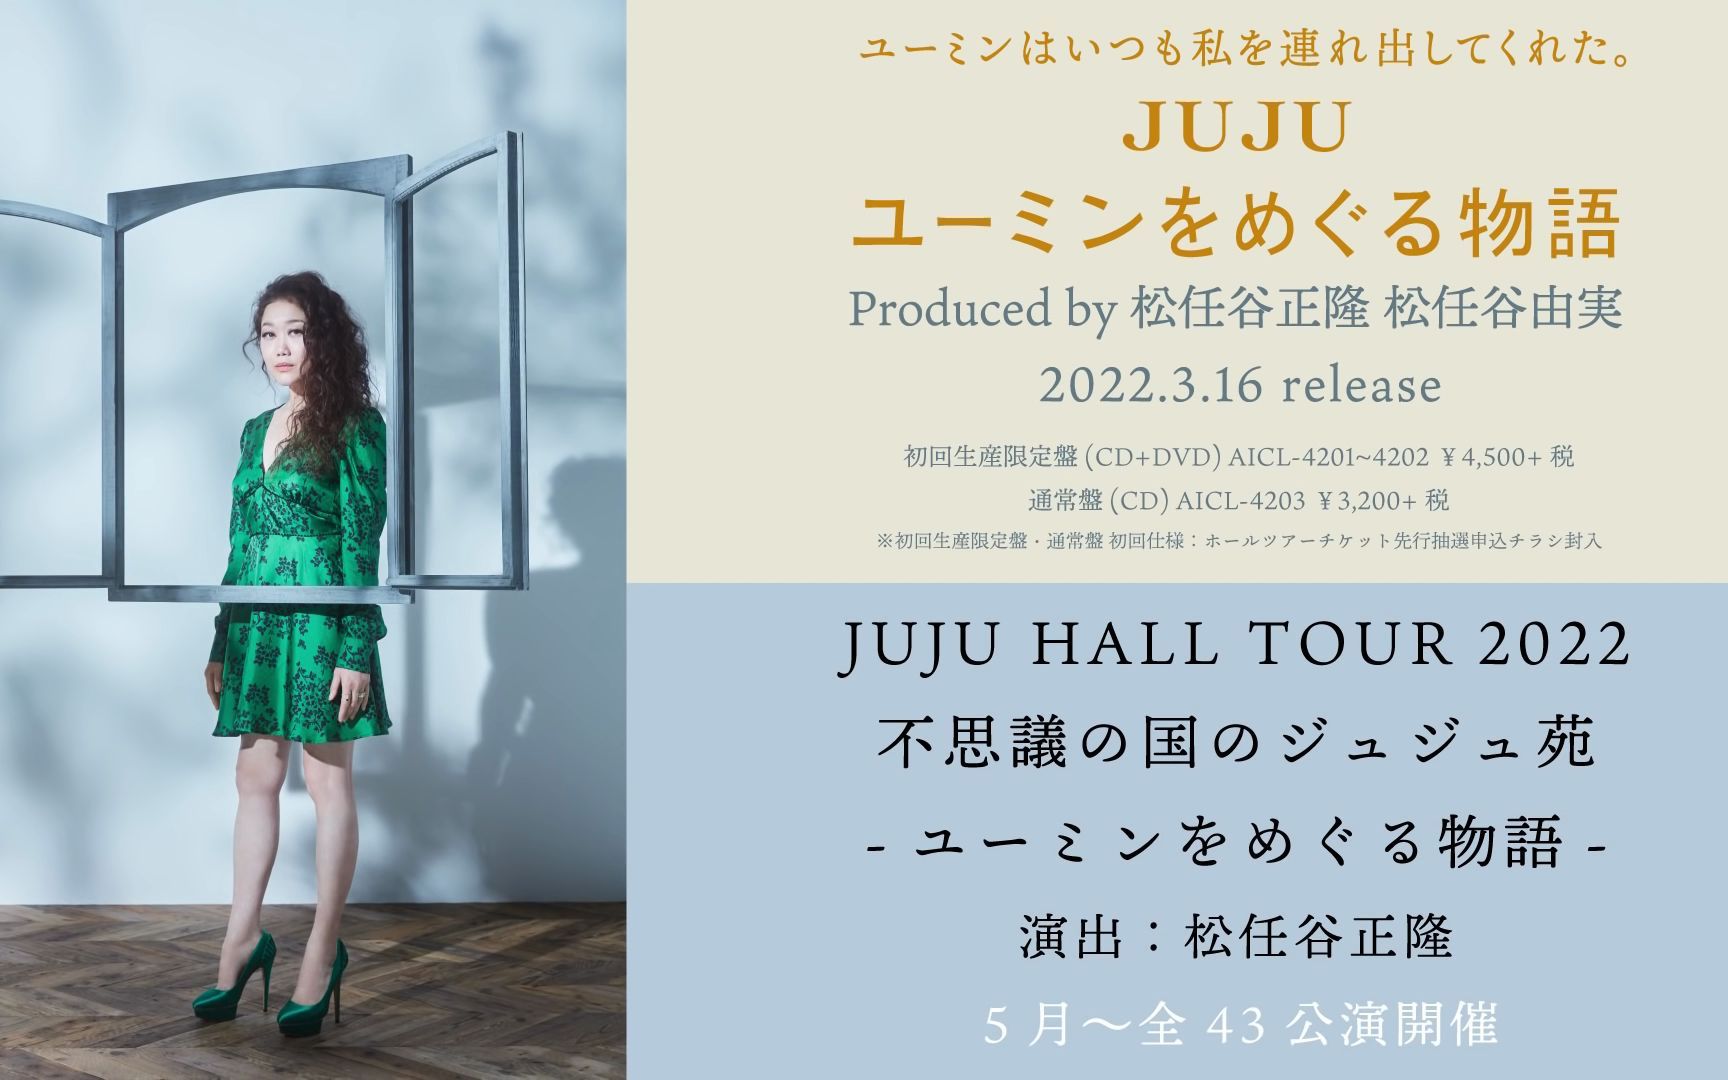 690円 【2022春夏新色】 JUJU CD ユーミンをめぐる物語 通常盤